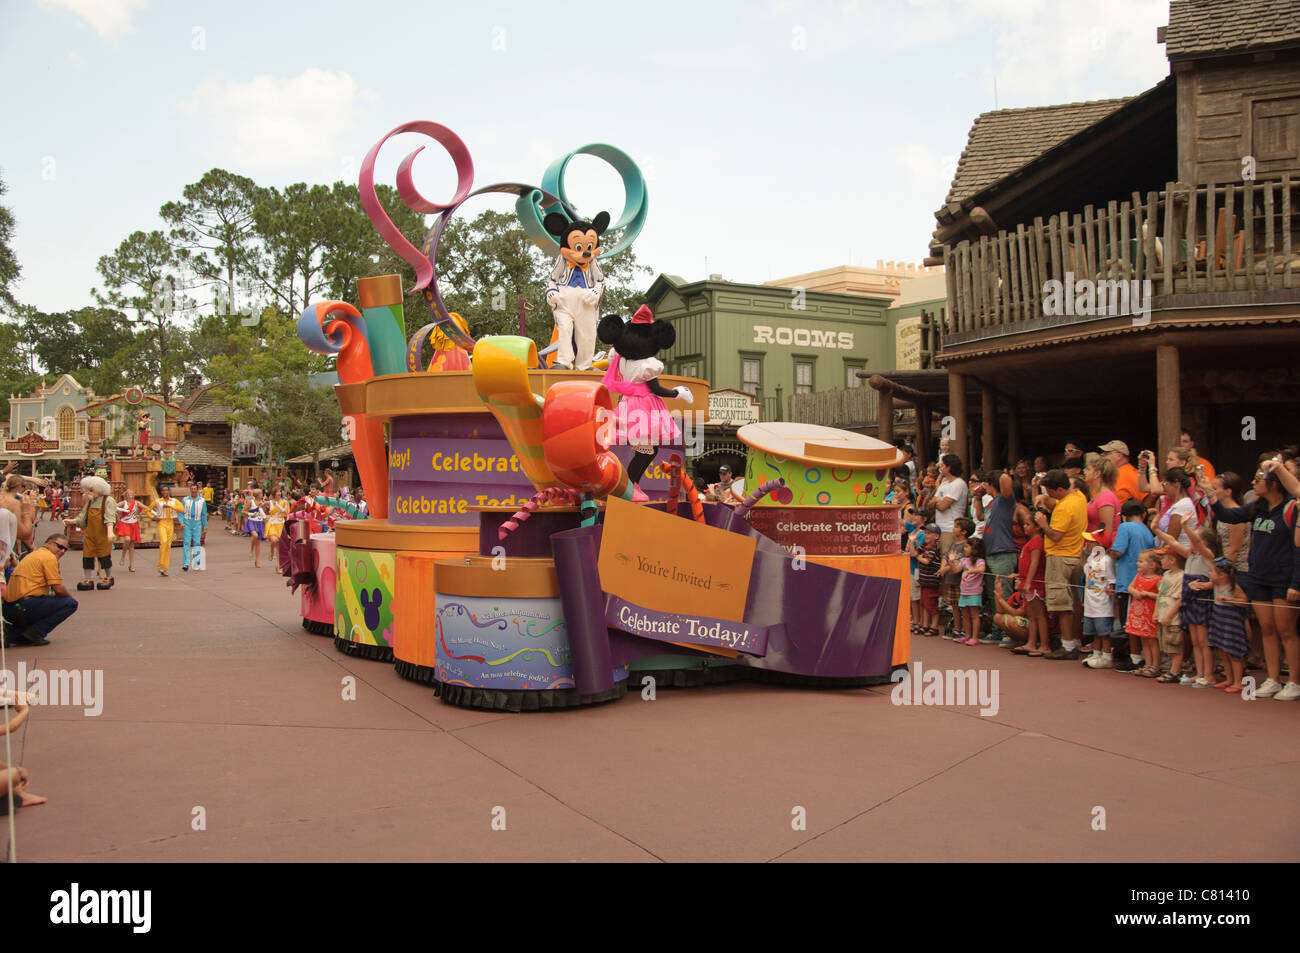 Le royaume magique célébrer un rêve viennent vrai Mickey Mouse Minnie Mouse parade float Banque D'Images